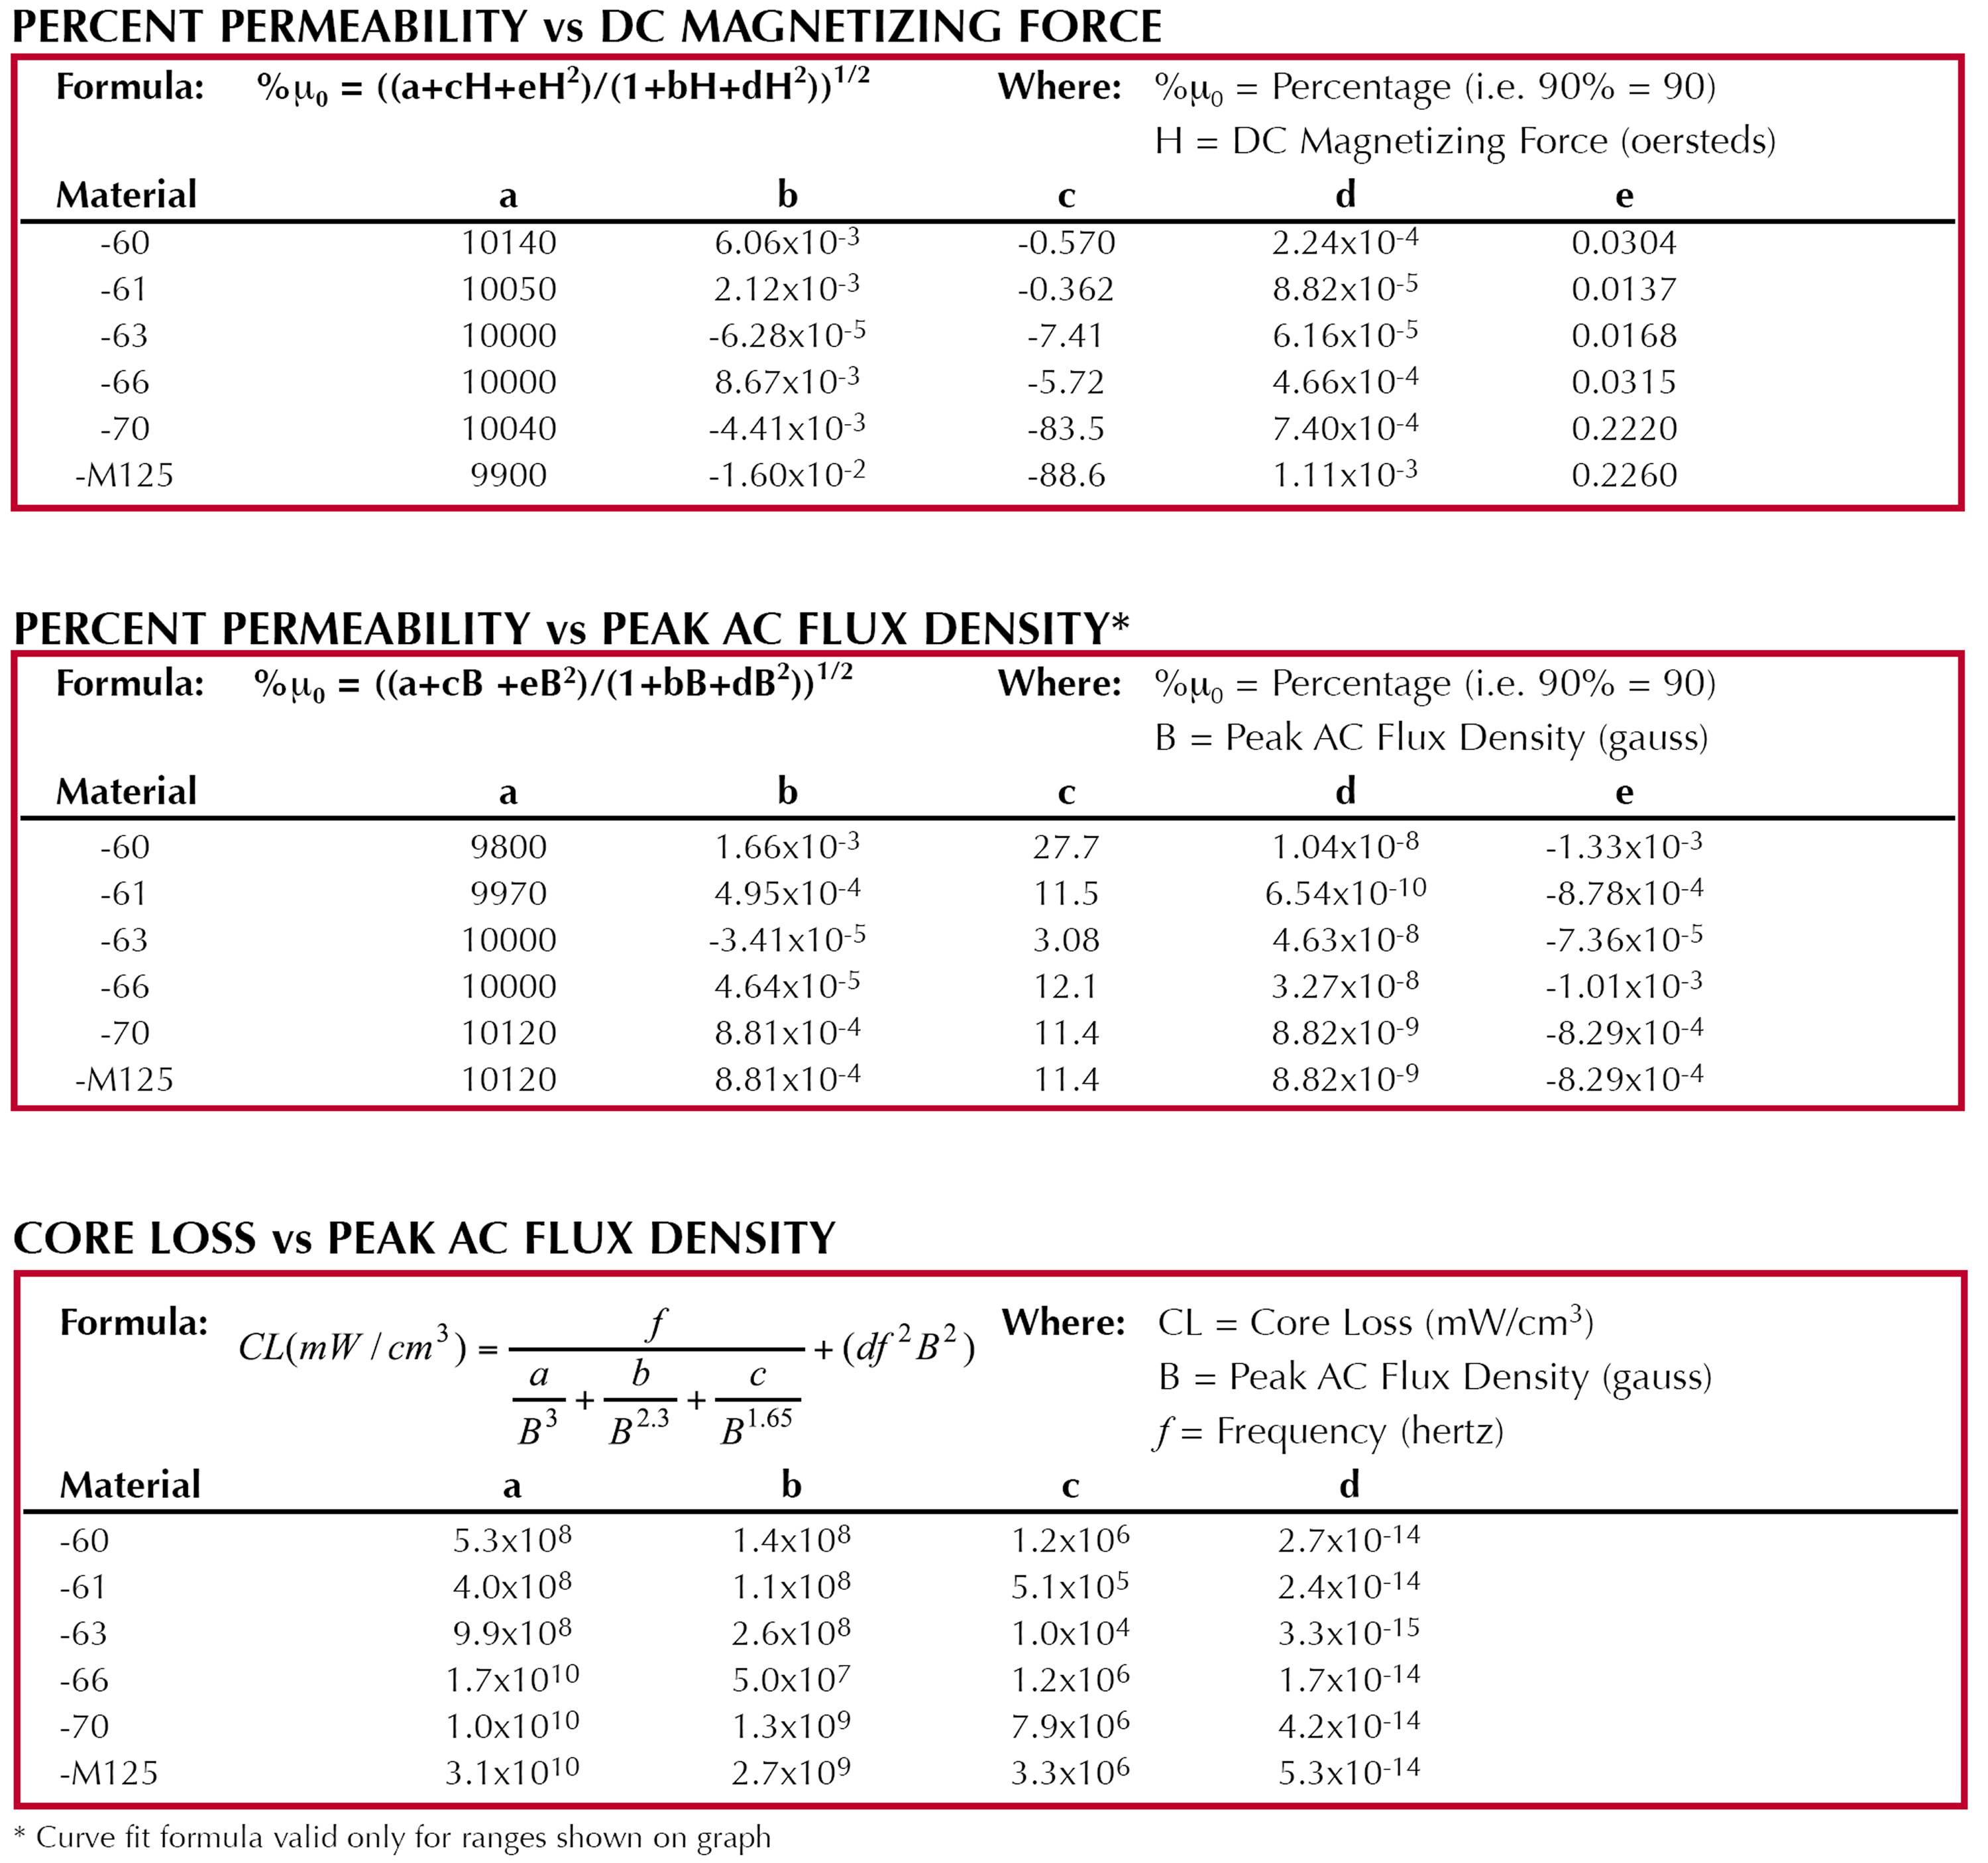 Formula: Percent Permeability vs DC Magnetizing Force